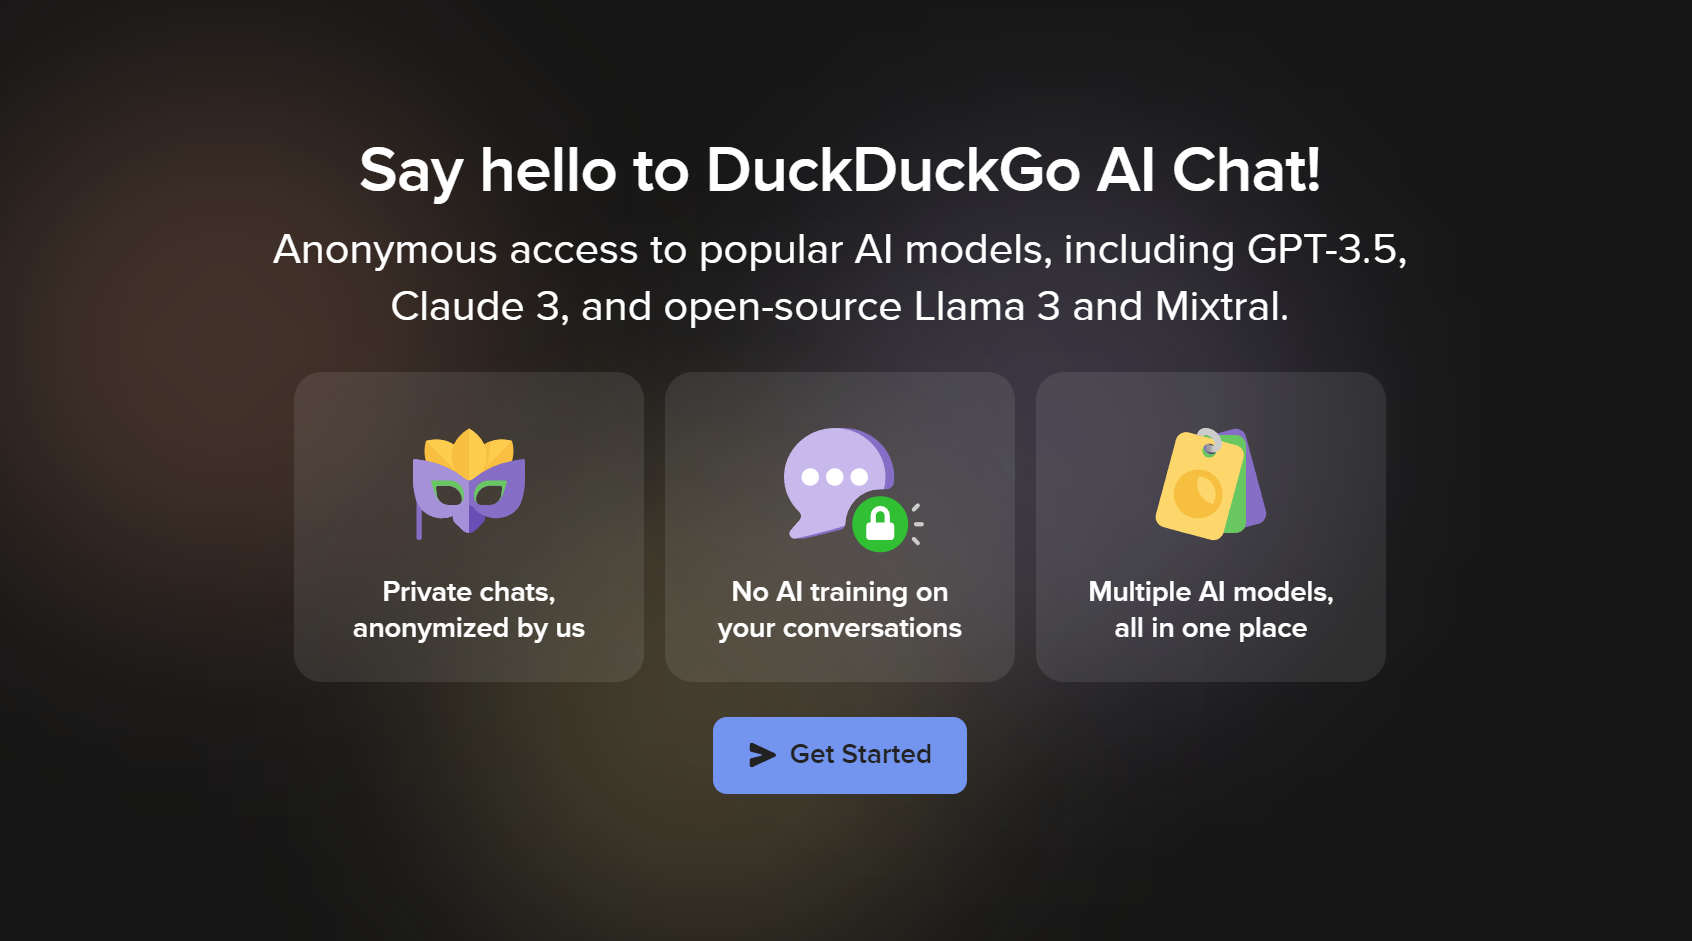 Tela de boas-vindas do bate-papo AI do DuckDuckGo